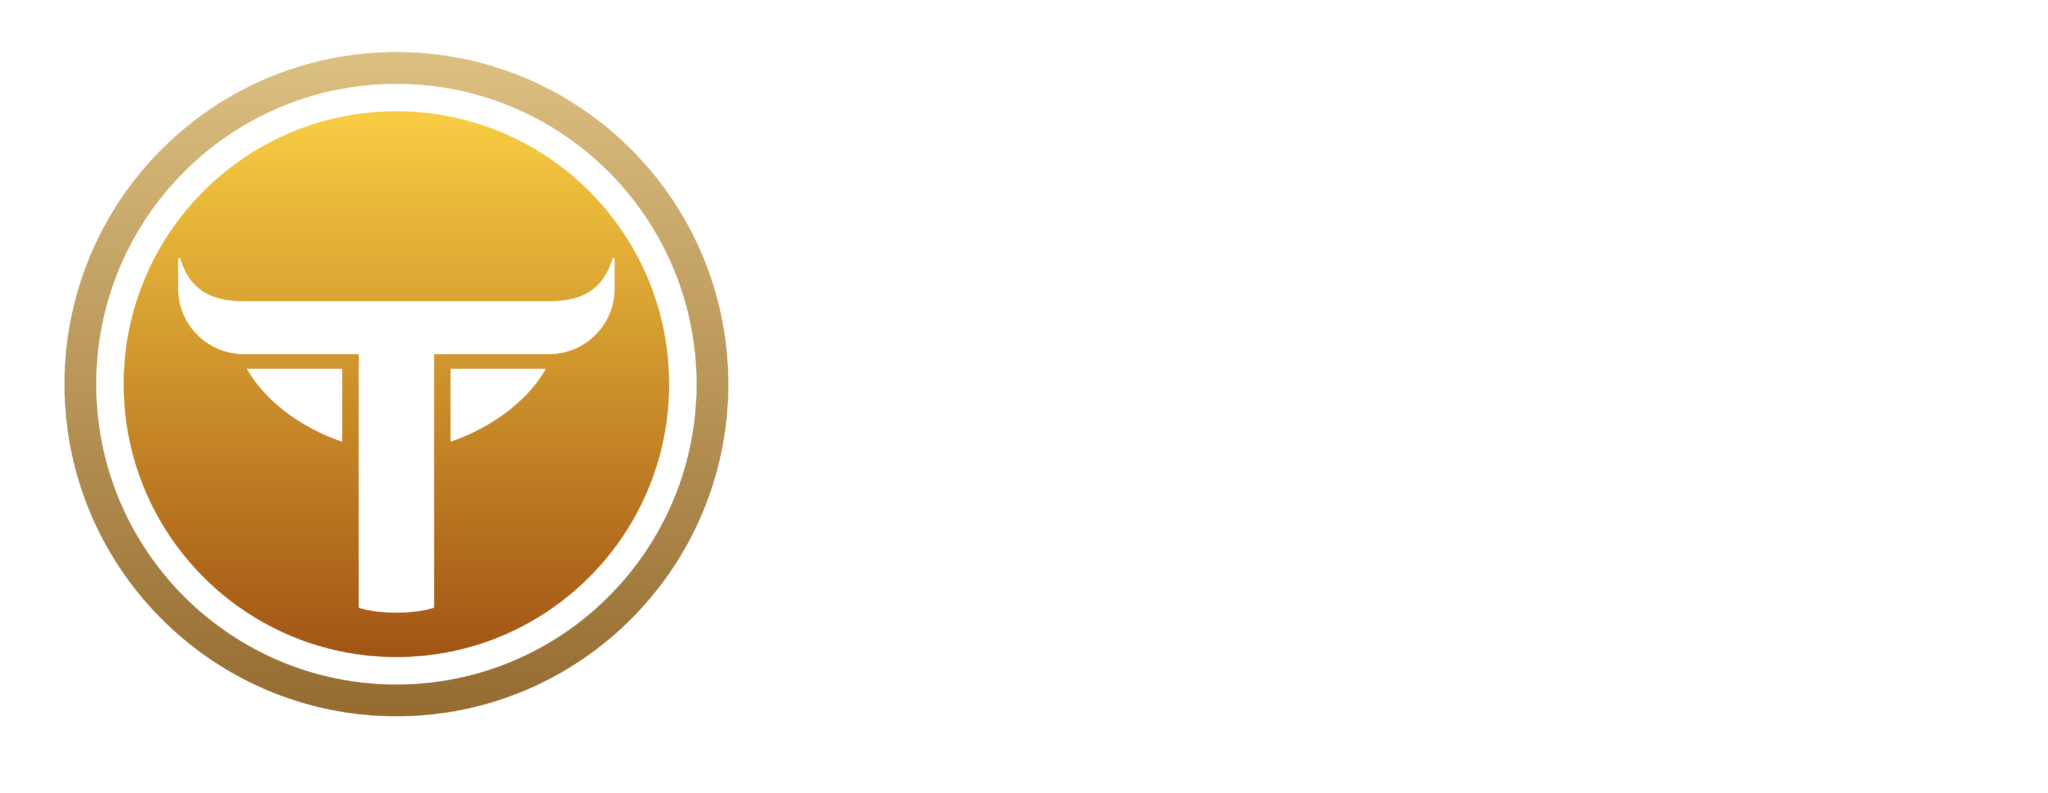 Taurus Branding Suite Master doc 60